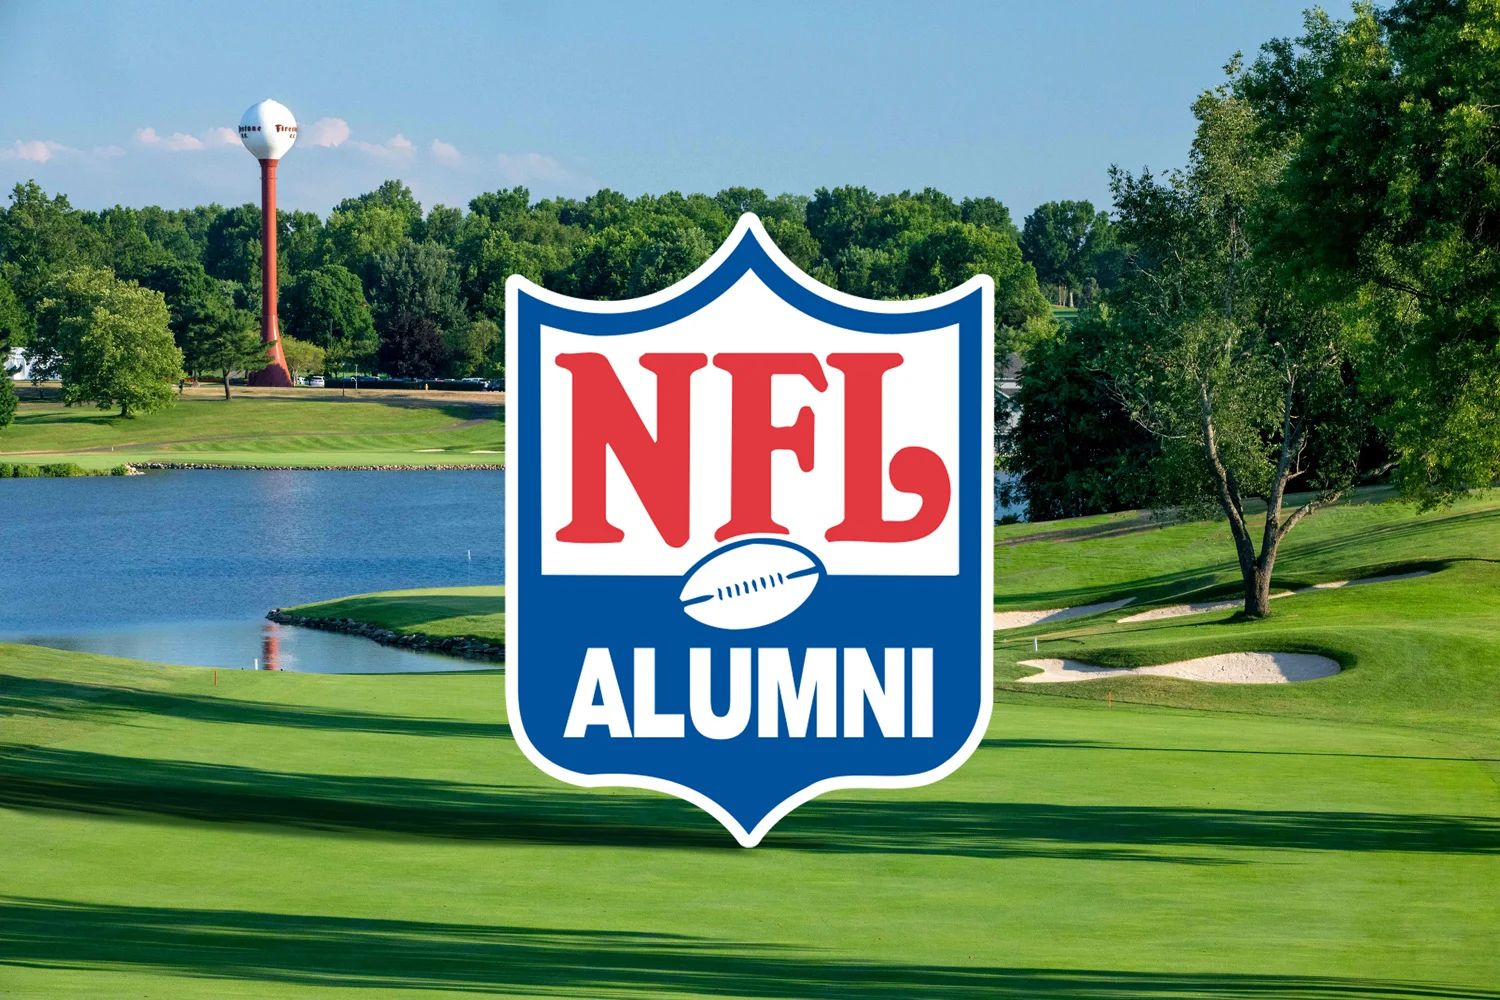 NFL Alumni og Aventus' NFT-initiativ for pensionister